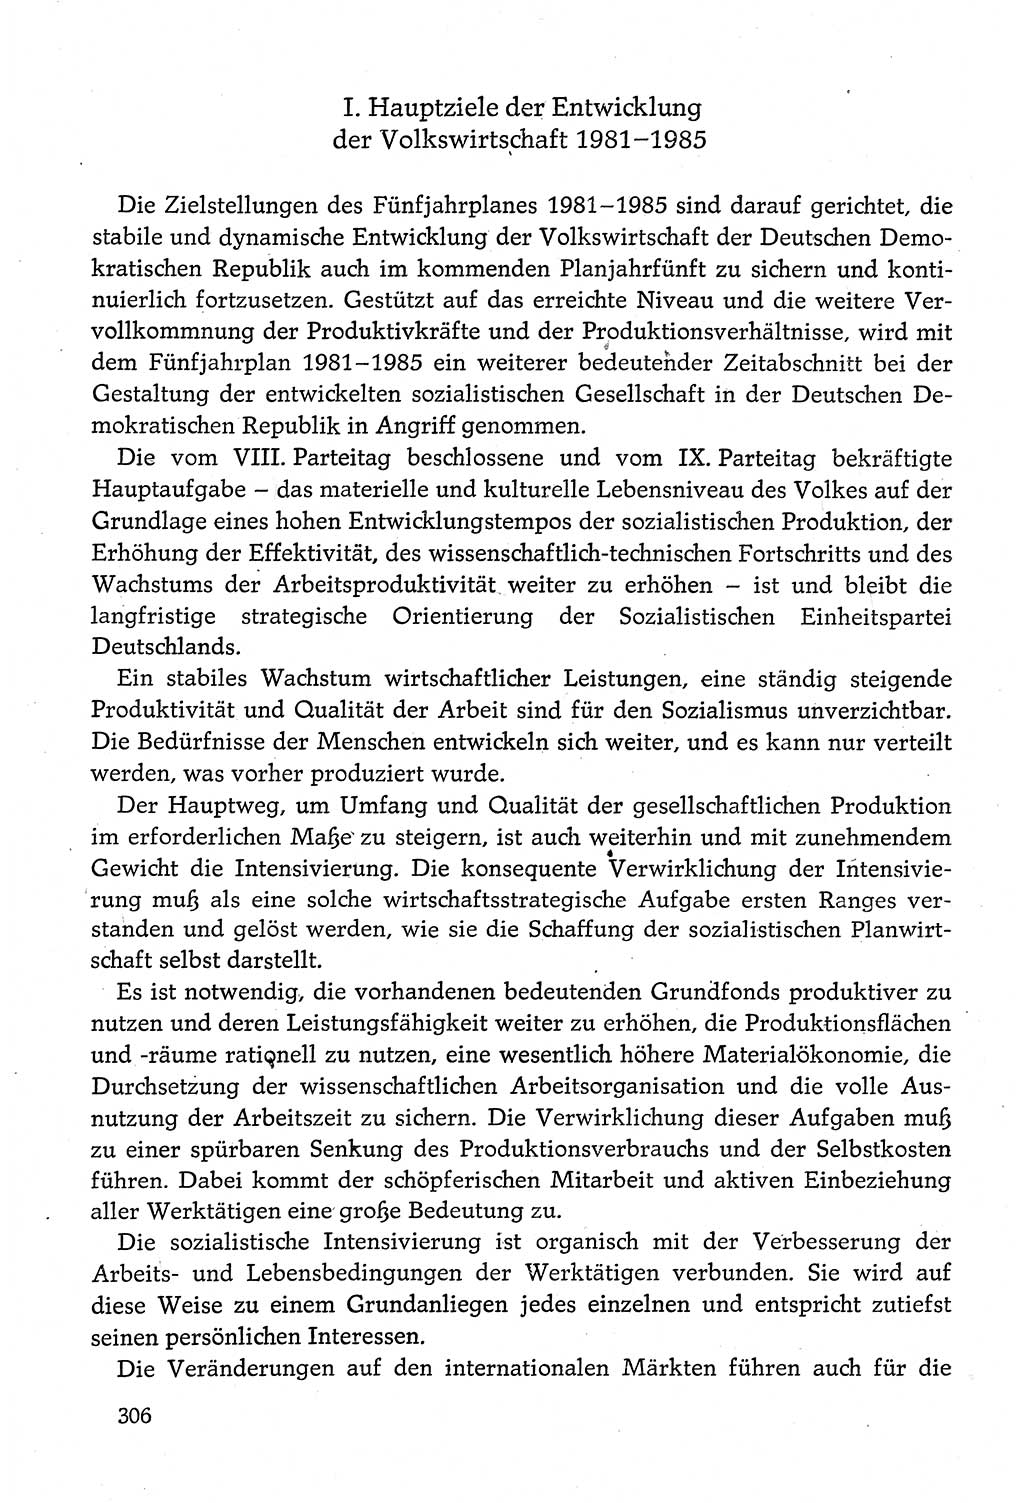 Dokumente der Sozialistischen Einheitspartei Deutschlands (SED) [Deutsche Demokratische Republik (DDR)] 1980-1981, Seite 306 (Dok. SED DDR 1980-1981, S. 306)